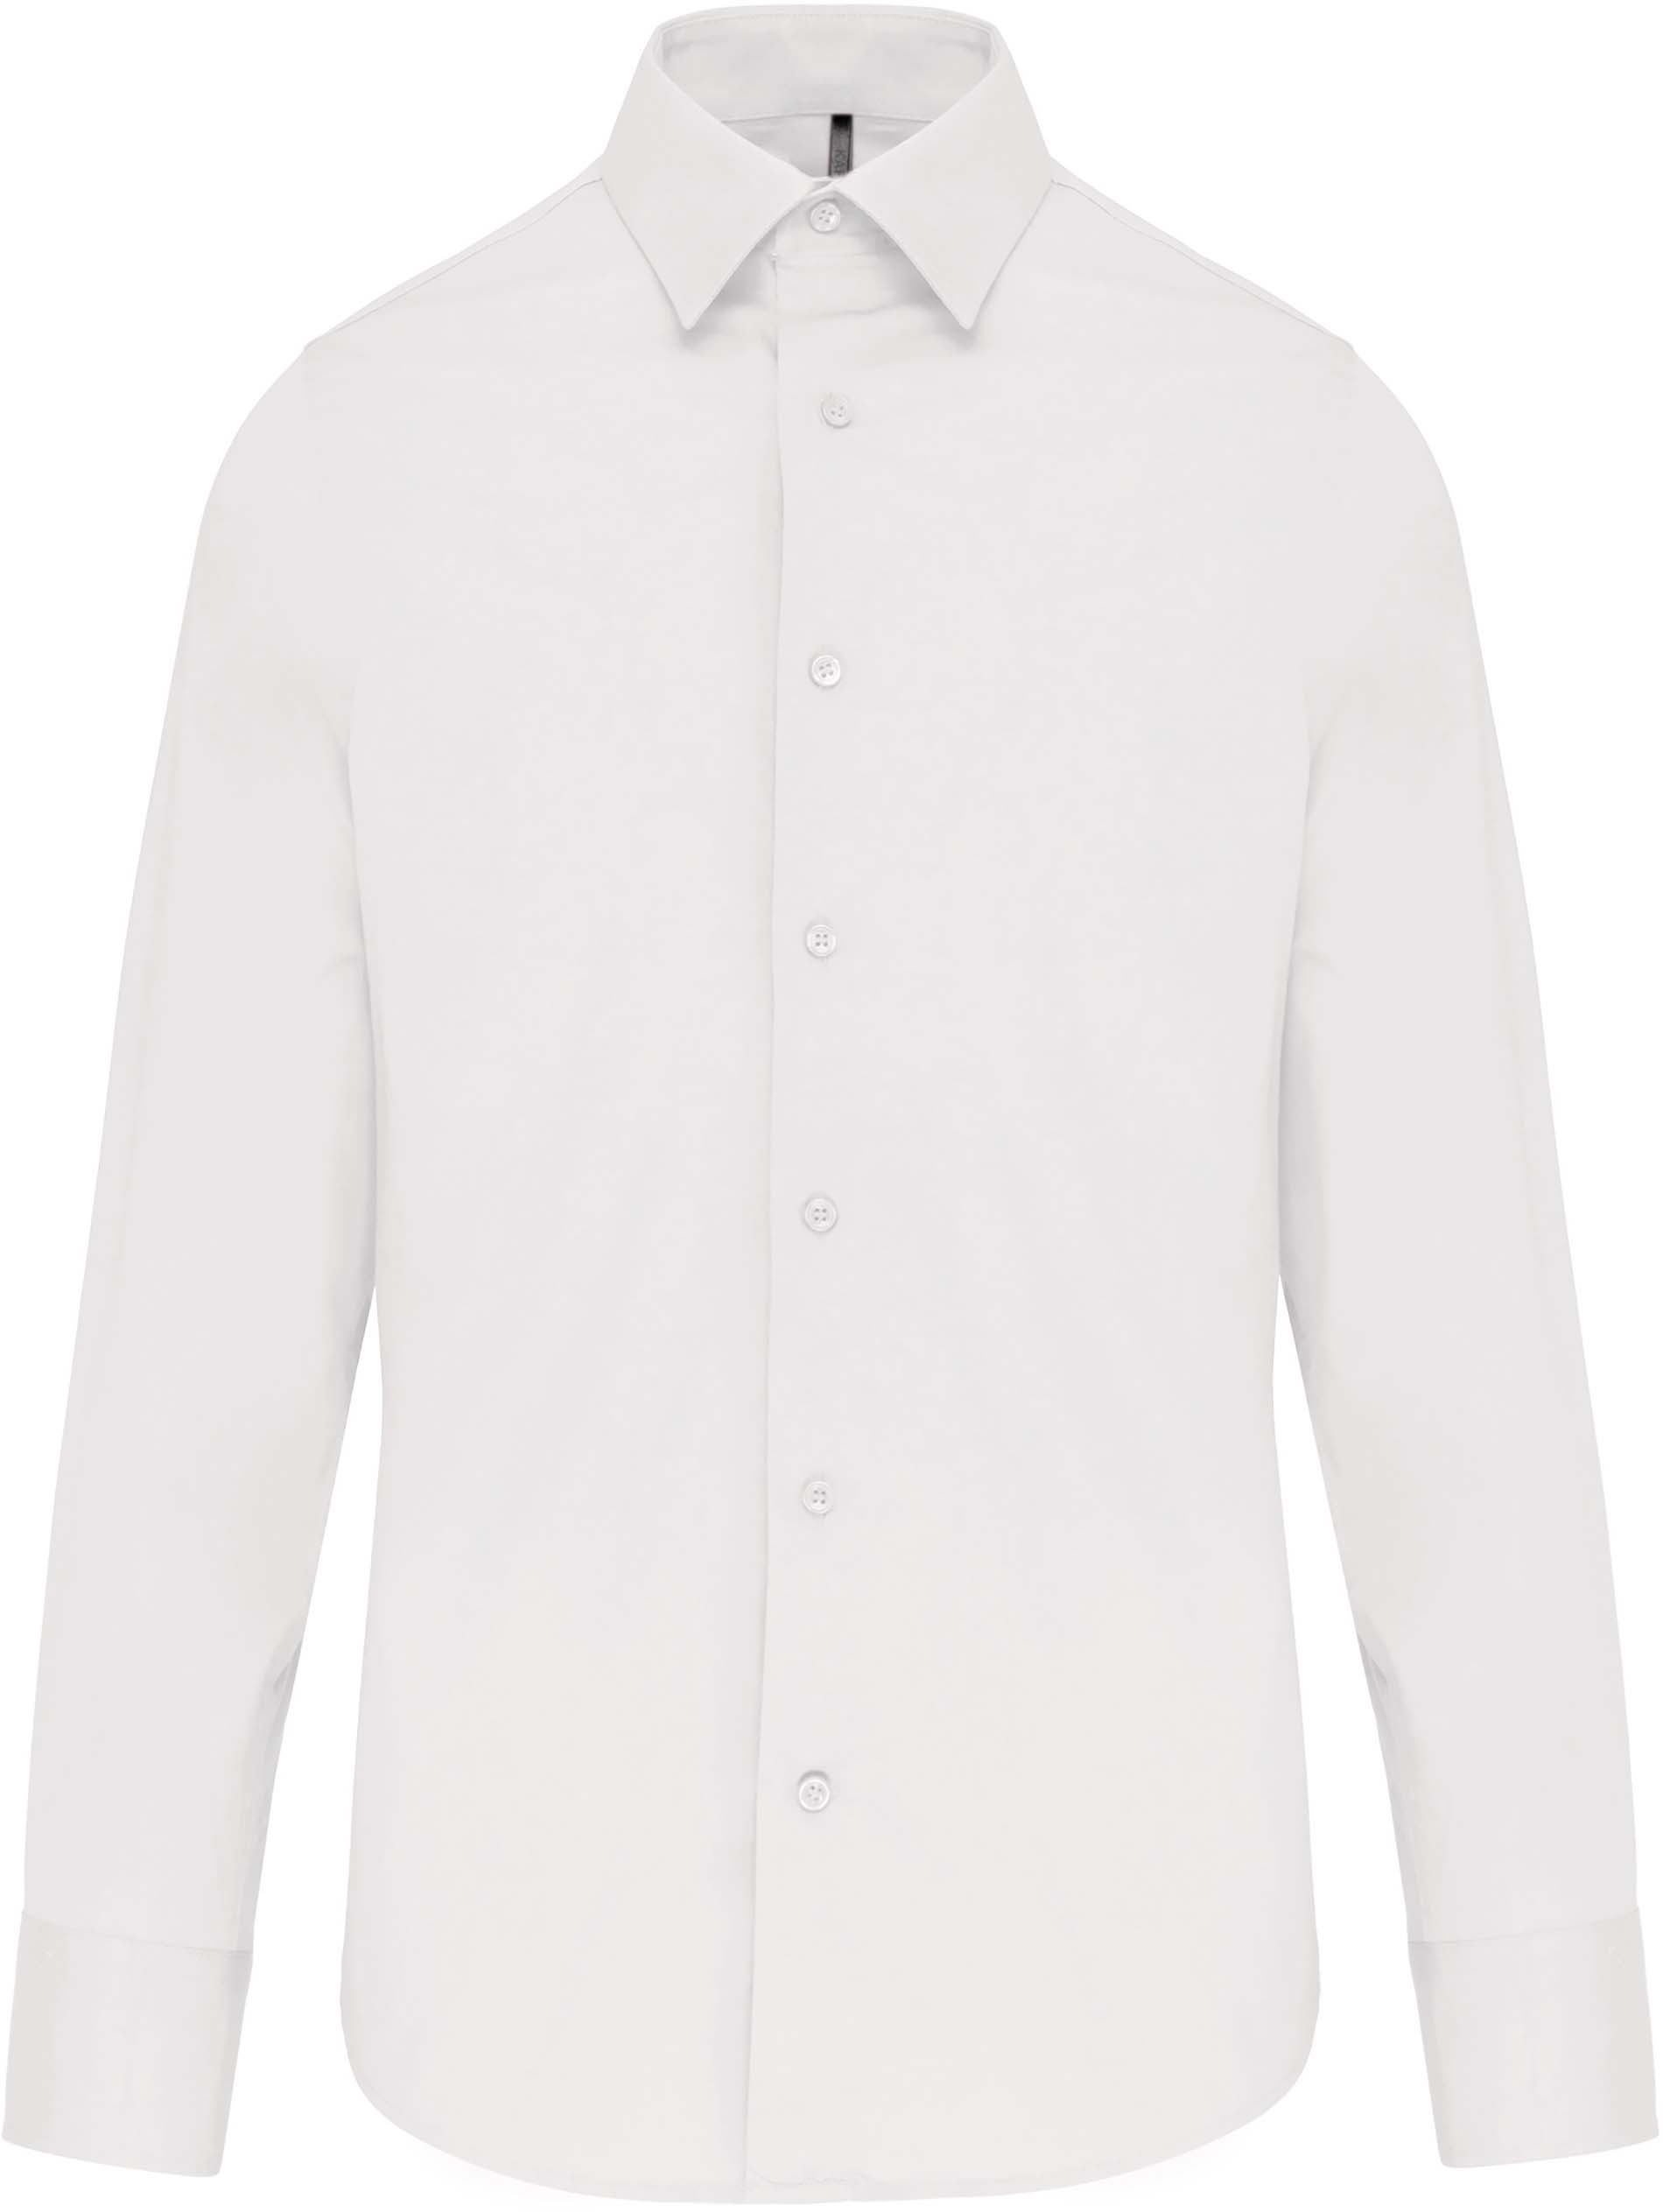 Pánská strečová košile s dlouhým rukávem Velikost: L, Barva: white, Rozměr: 80,30/57